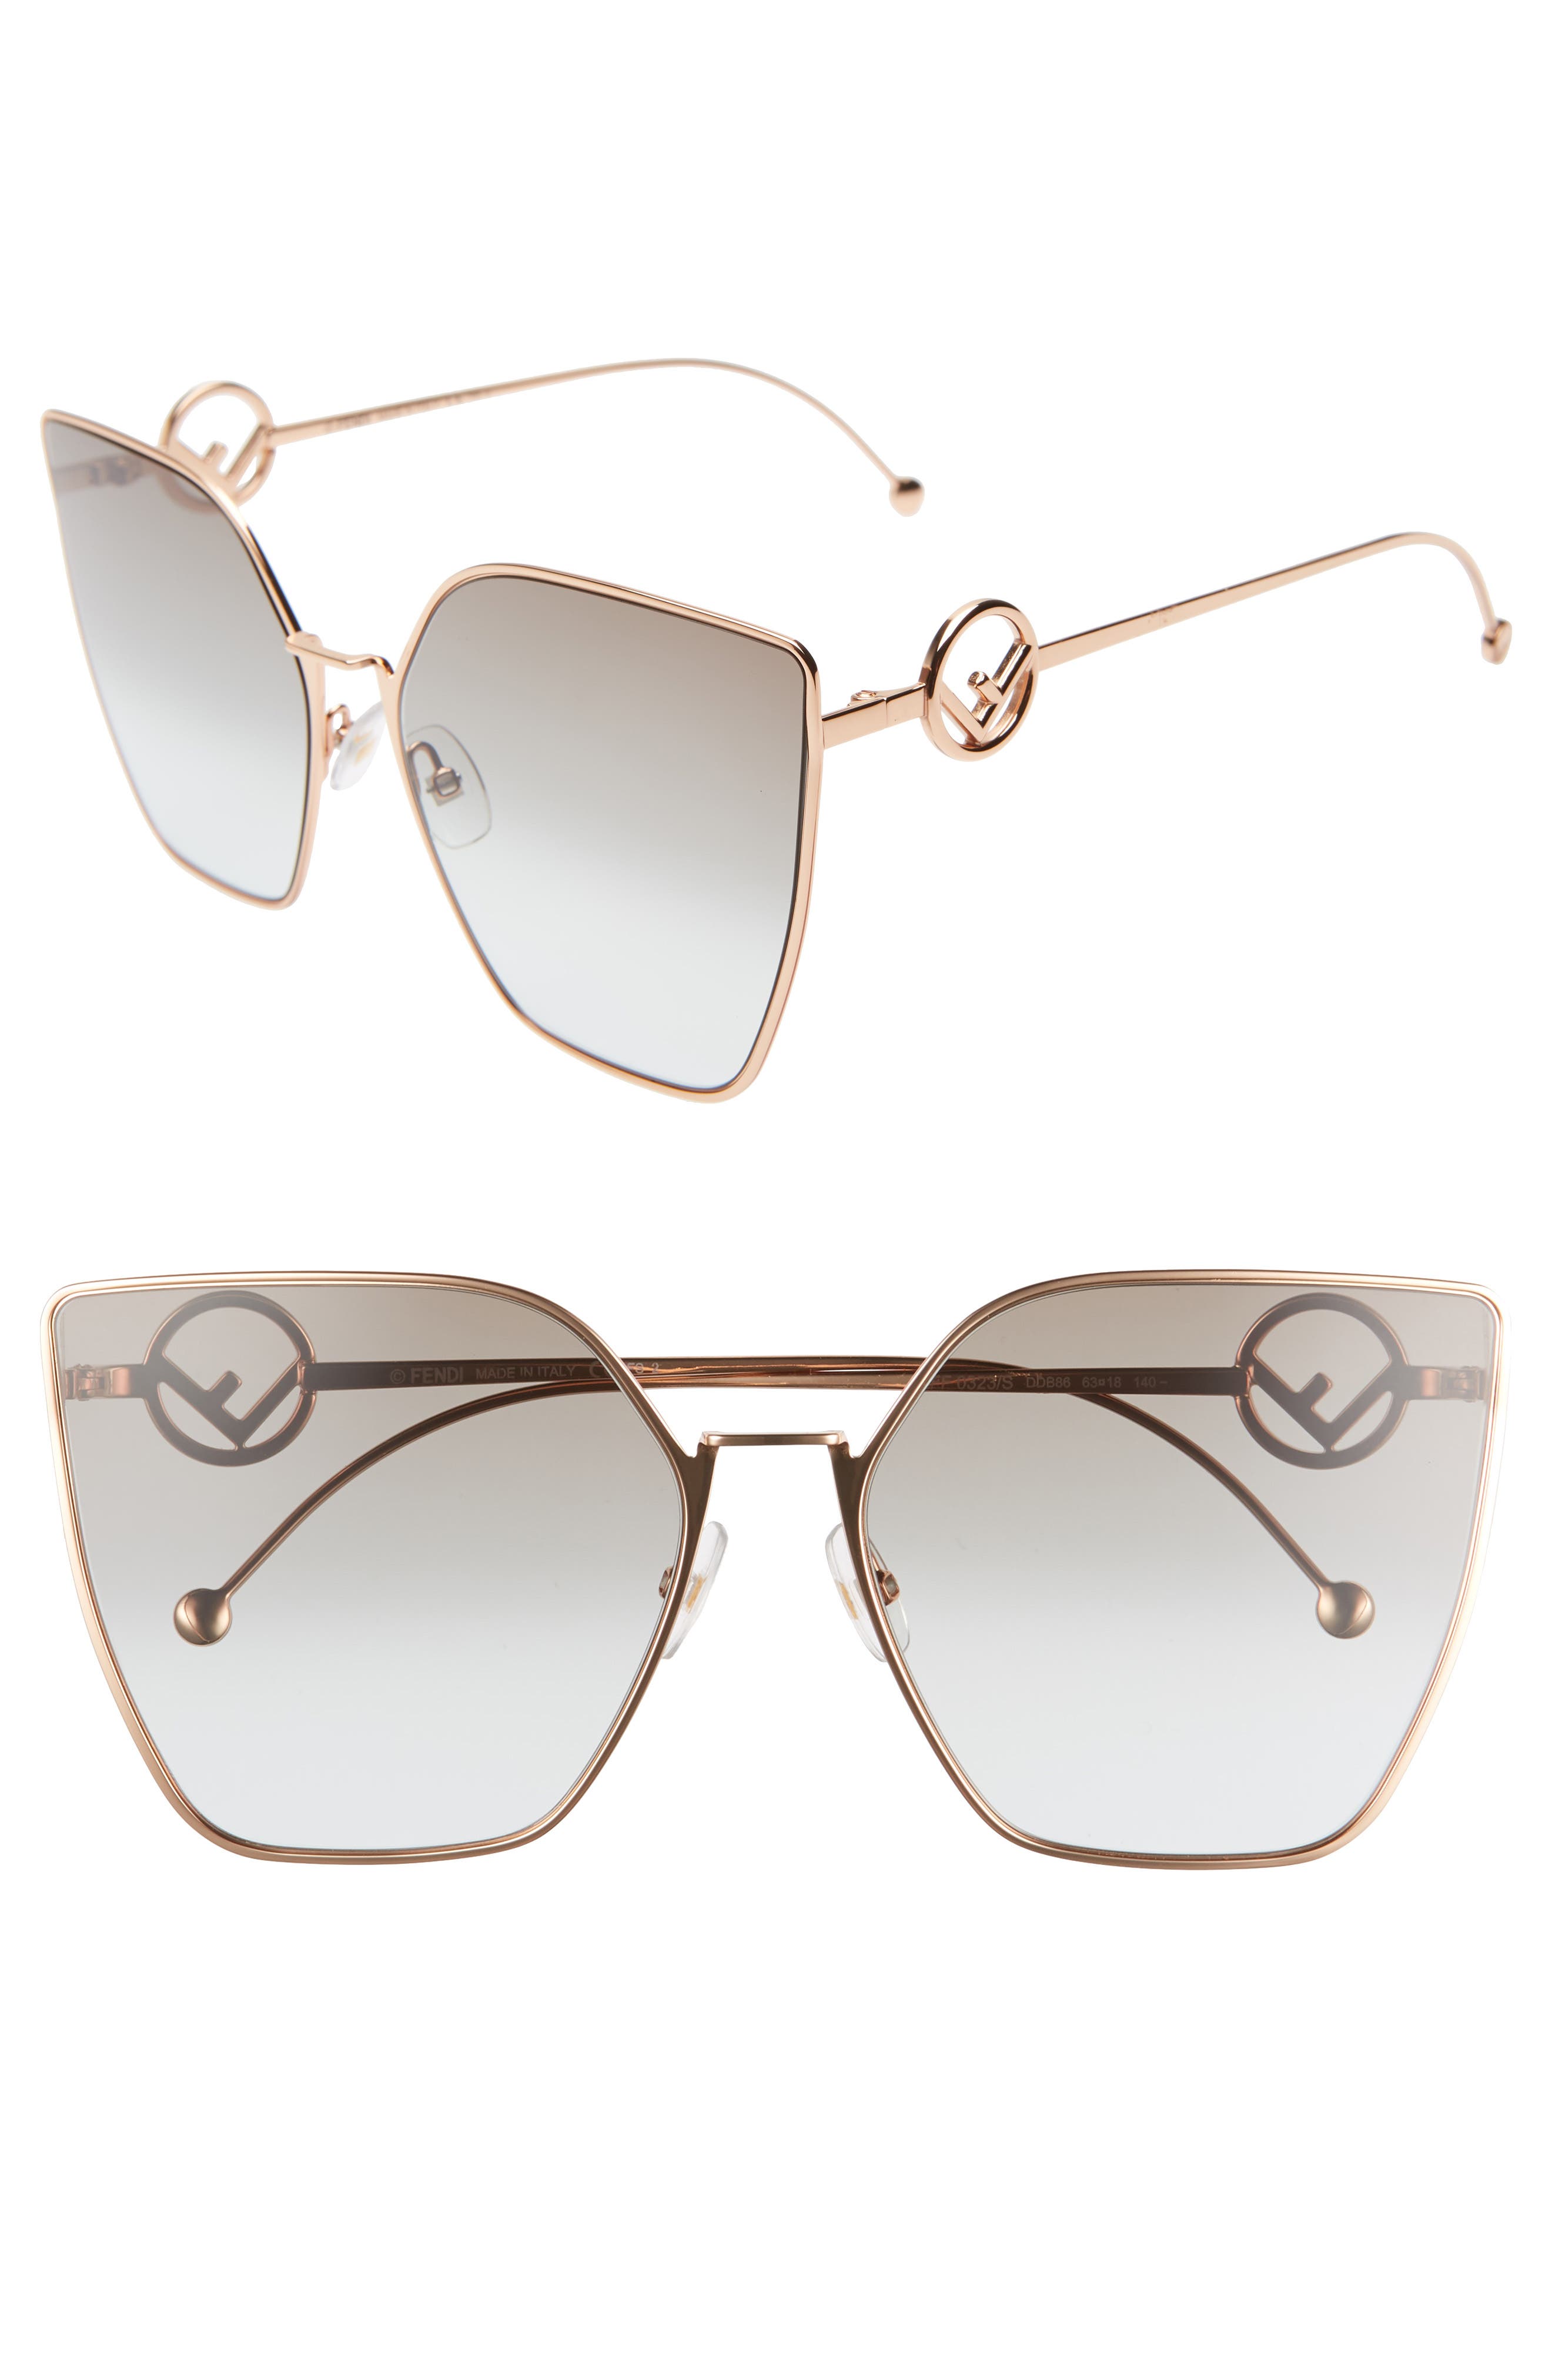 fendi sunglasses new collection